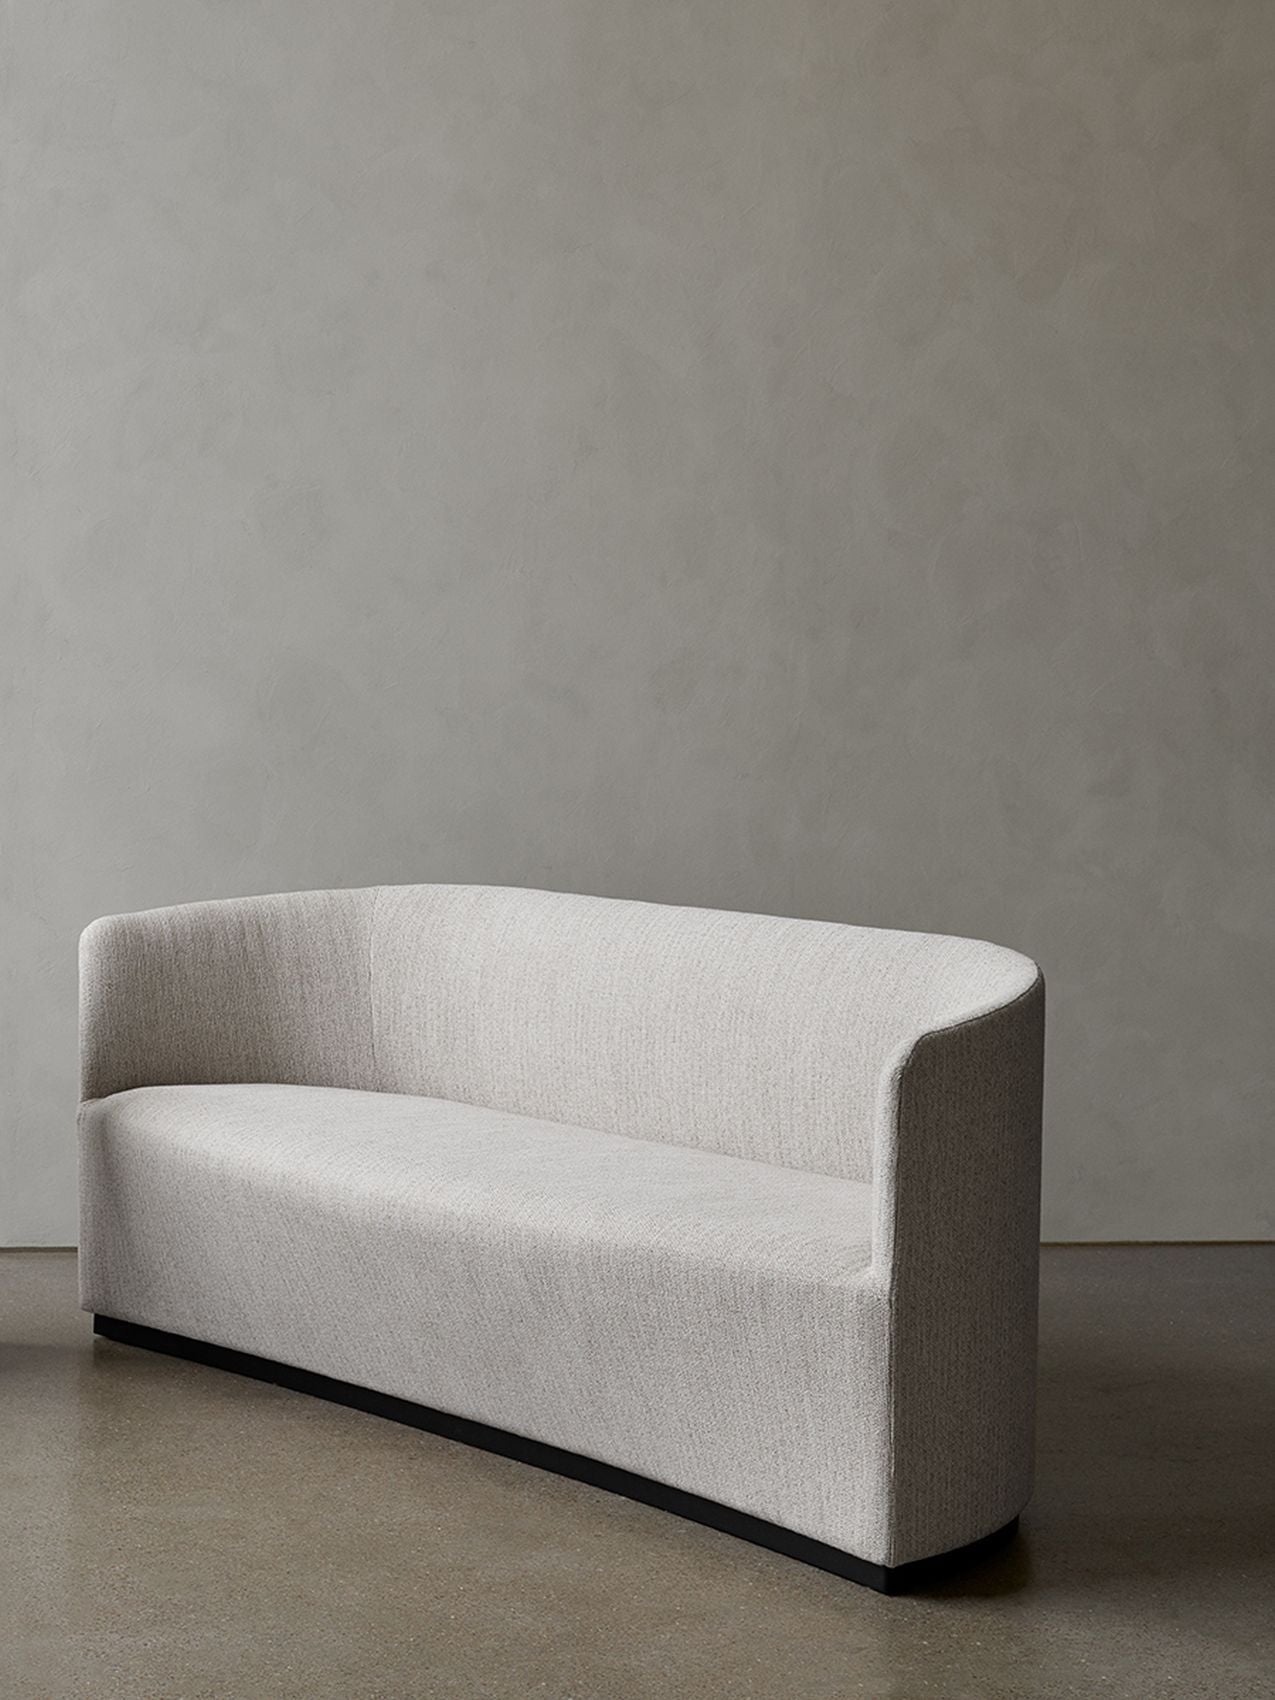 Tearoom, Sofa-Sofa-Nick Ross Studio-Cream Savanna 202-menu-minimalist-modern-danish-design-home-decor